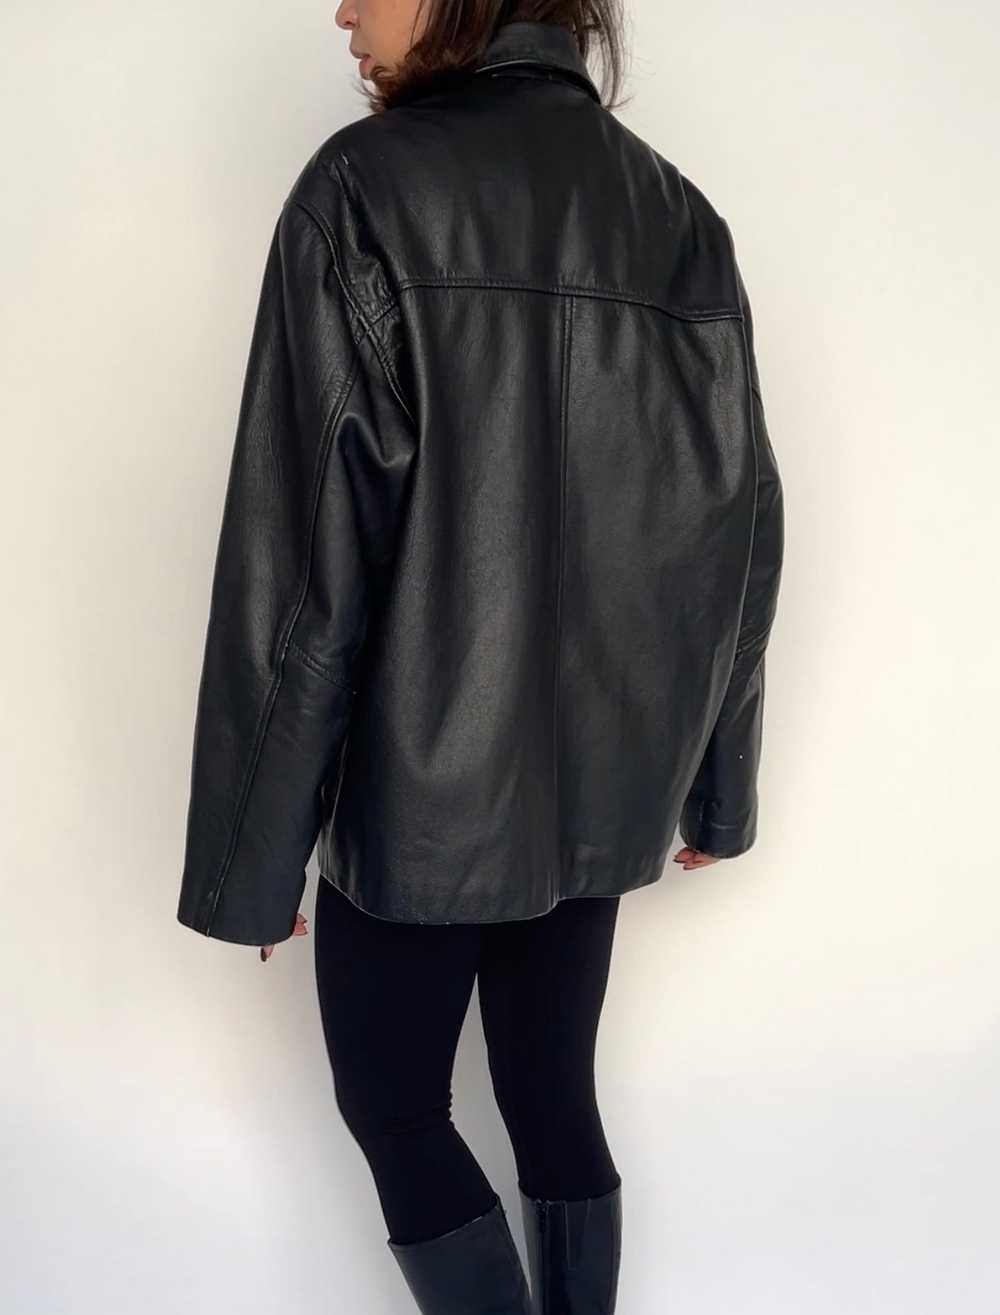 Black Boxy Leather Jacket - image 6